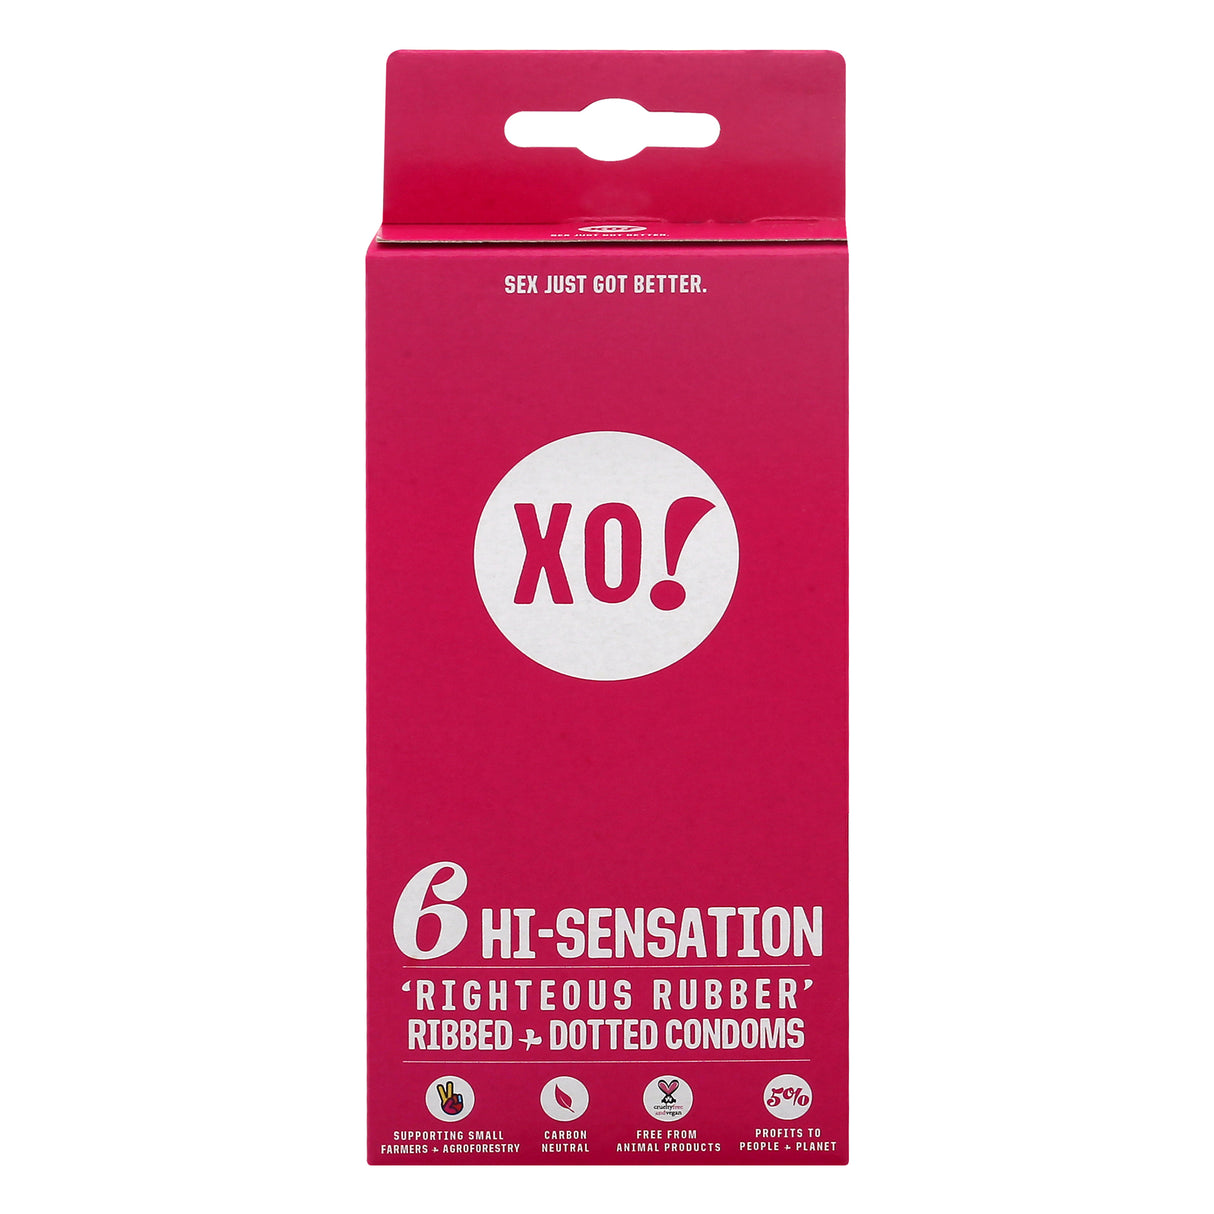 Xo! Condoms Hi-sensations 6 Count - Case of 8 - Cozy Farm 